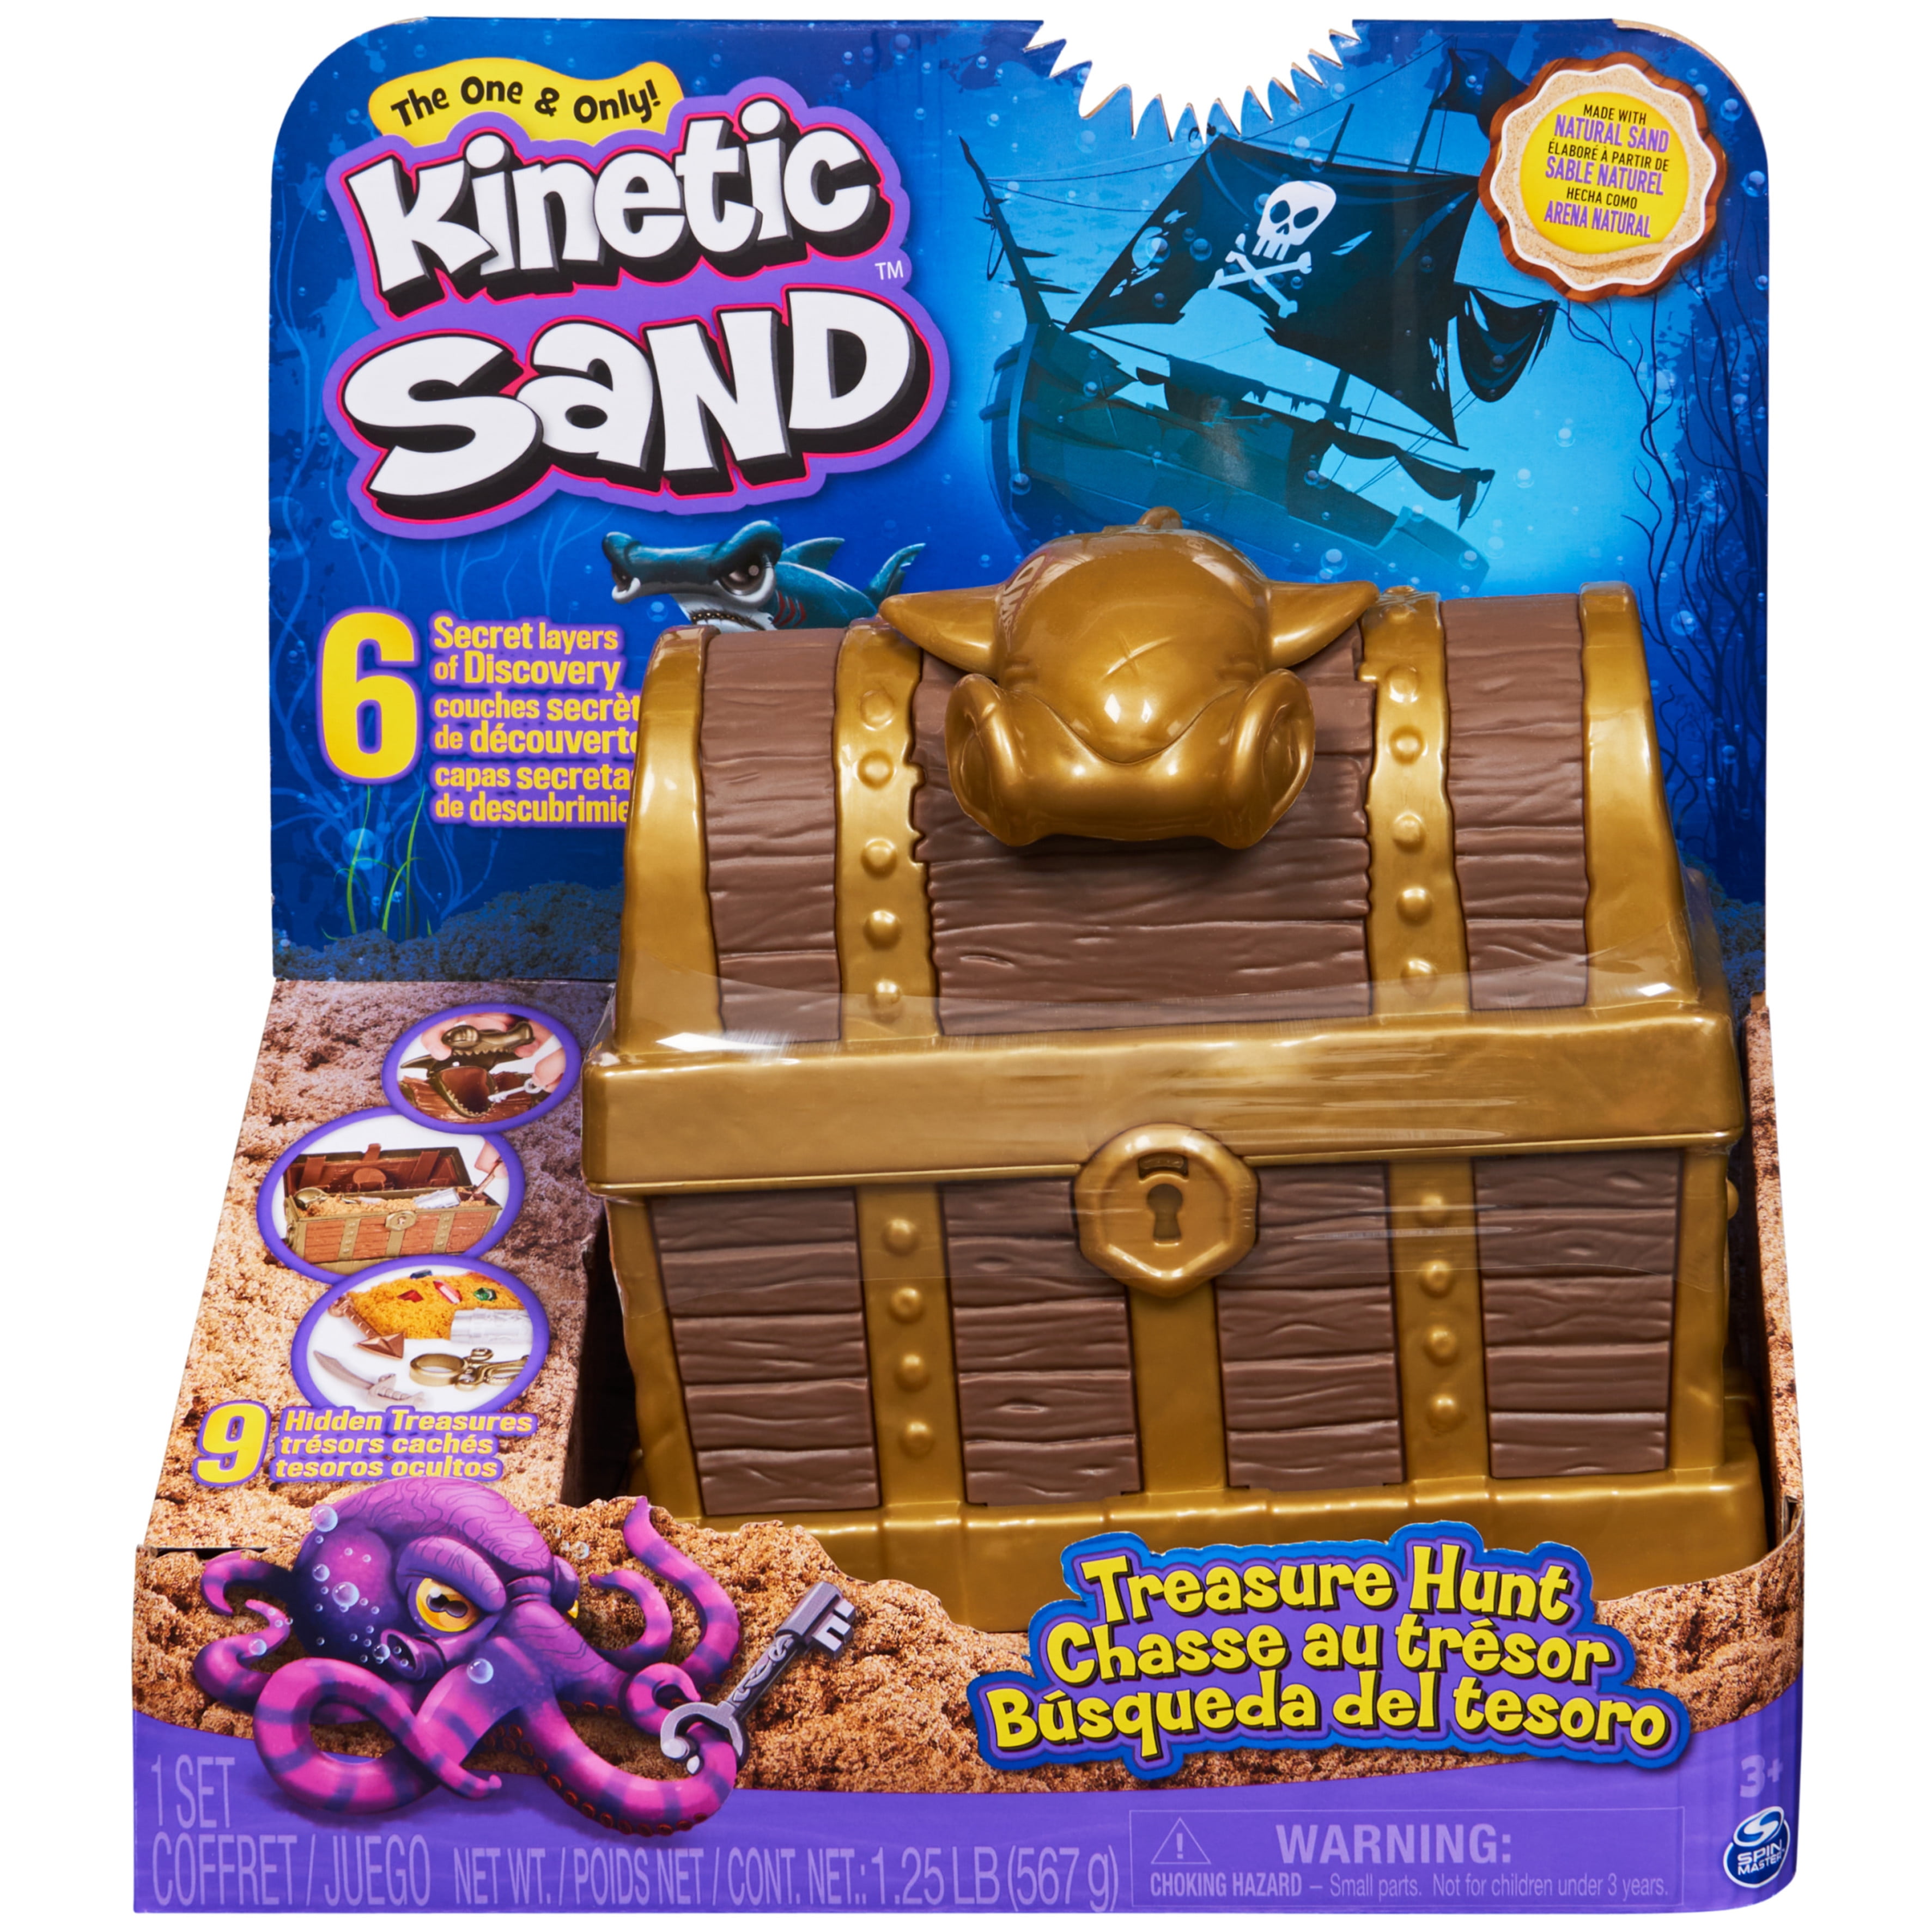 Kinetic Sand Sparkle Sandcastle Set w/ 1lb Teal Shimmer Kinetic Sand